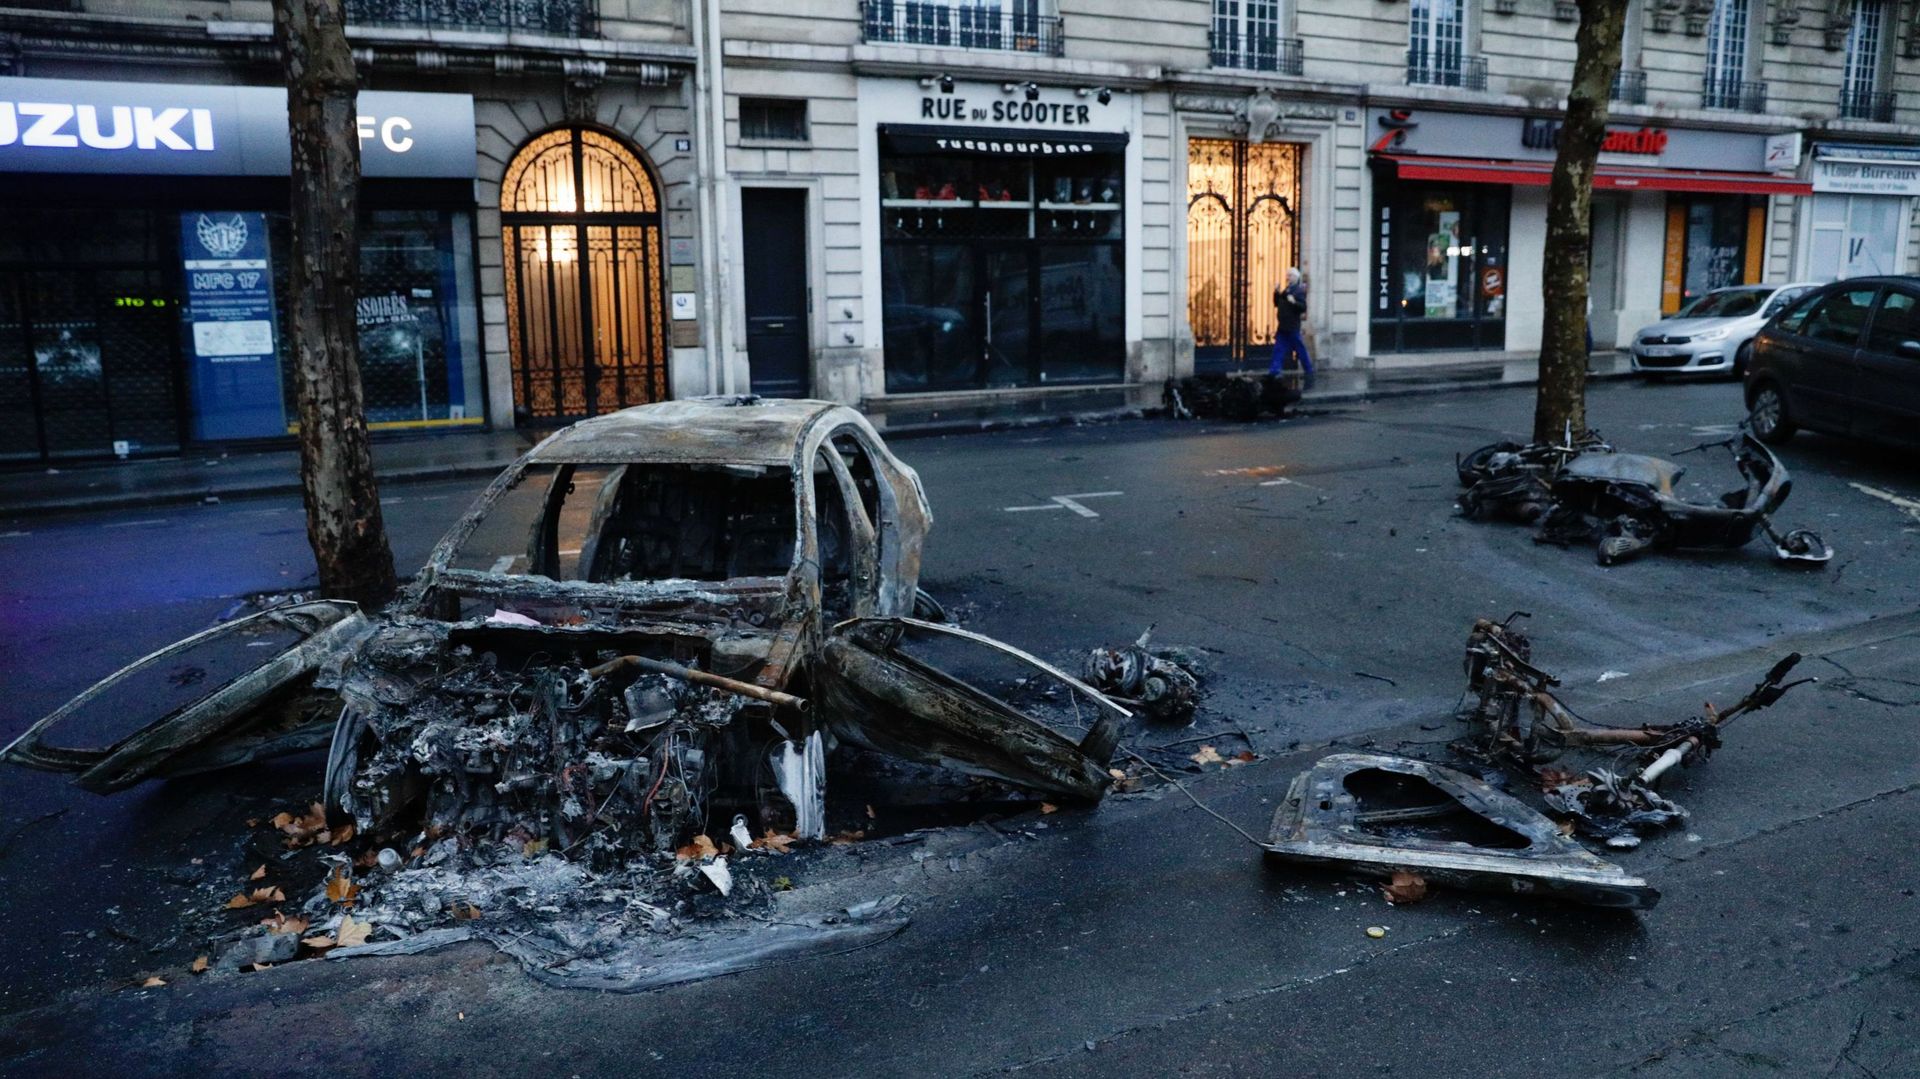 Voitures incendiées, vitrines brisées: les images de Paris au lendemain d'une journée de violences